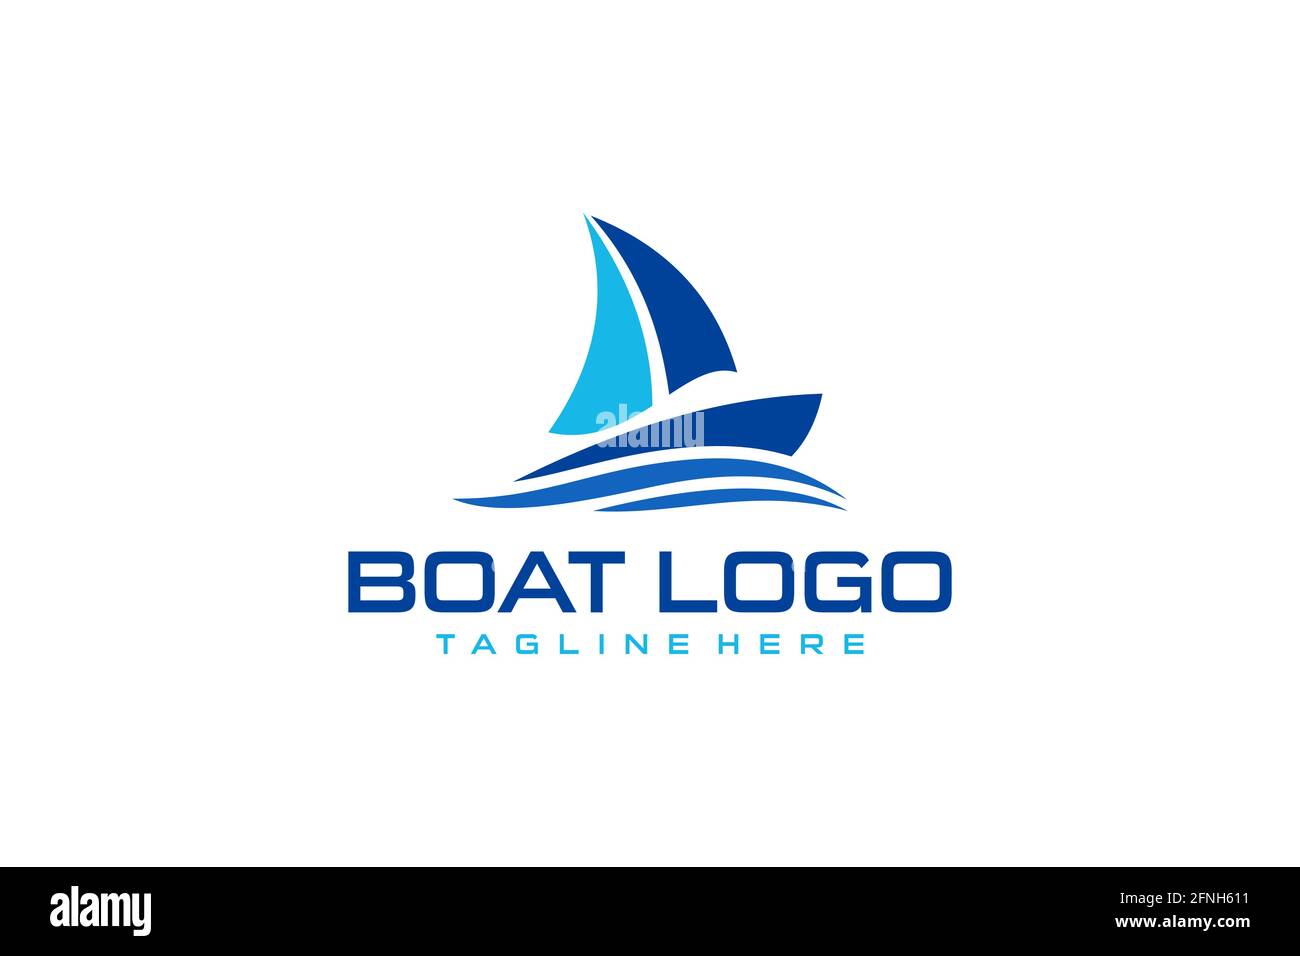 Boat logo immagini e fotografie stock ad alta risoluzione - Alamy